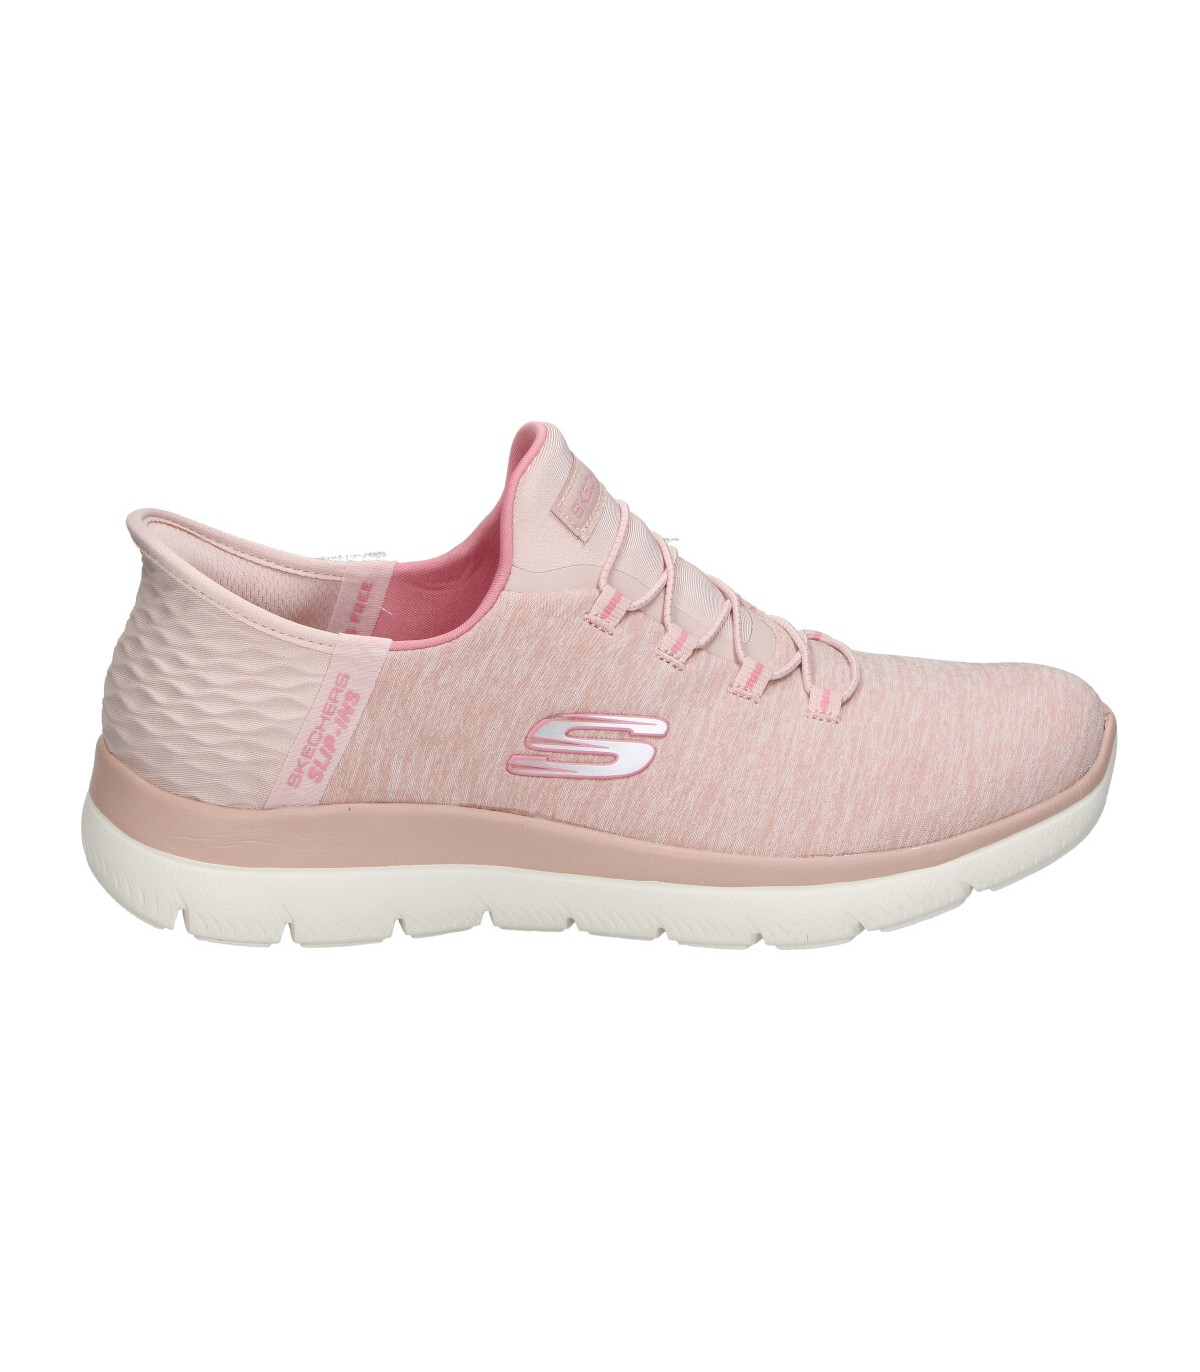 Zapatillas cómodo mujer SKECHERS 149937-ros rosa